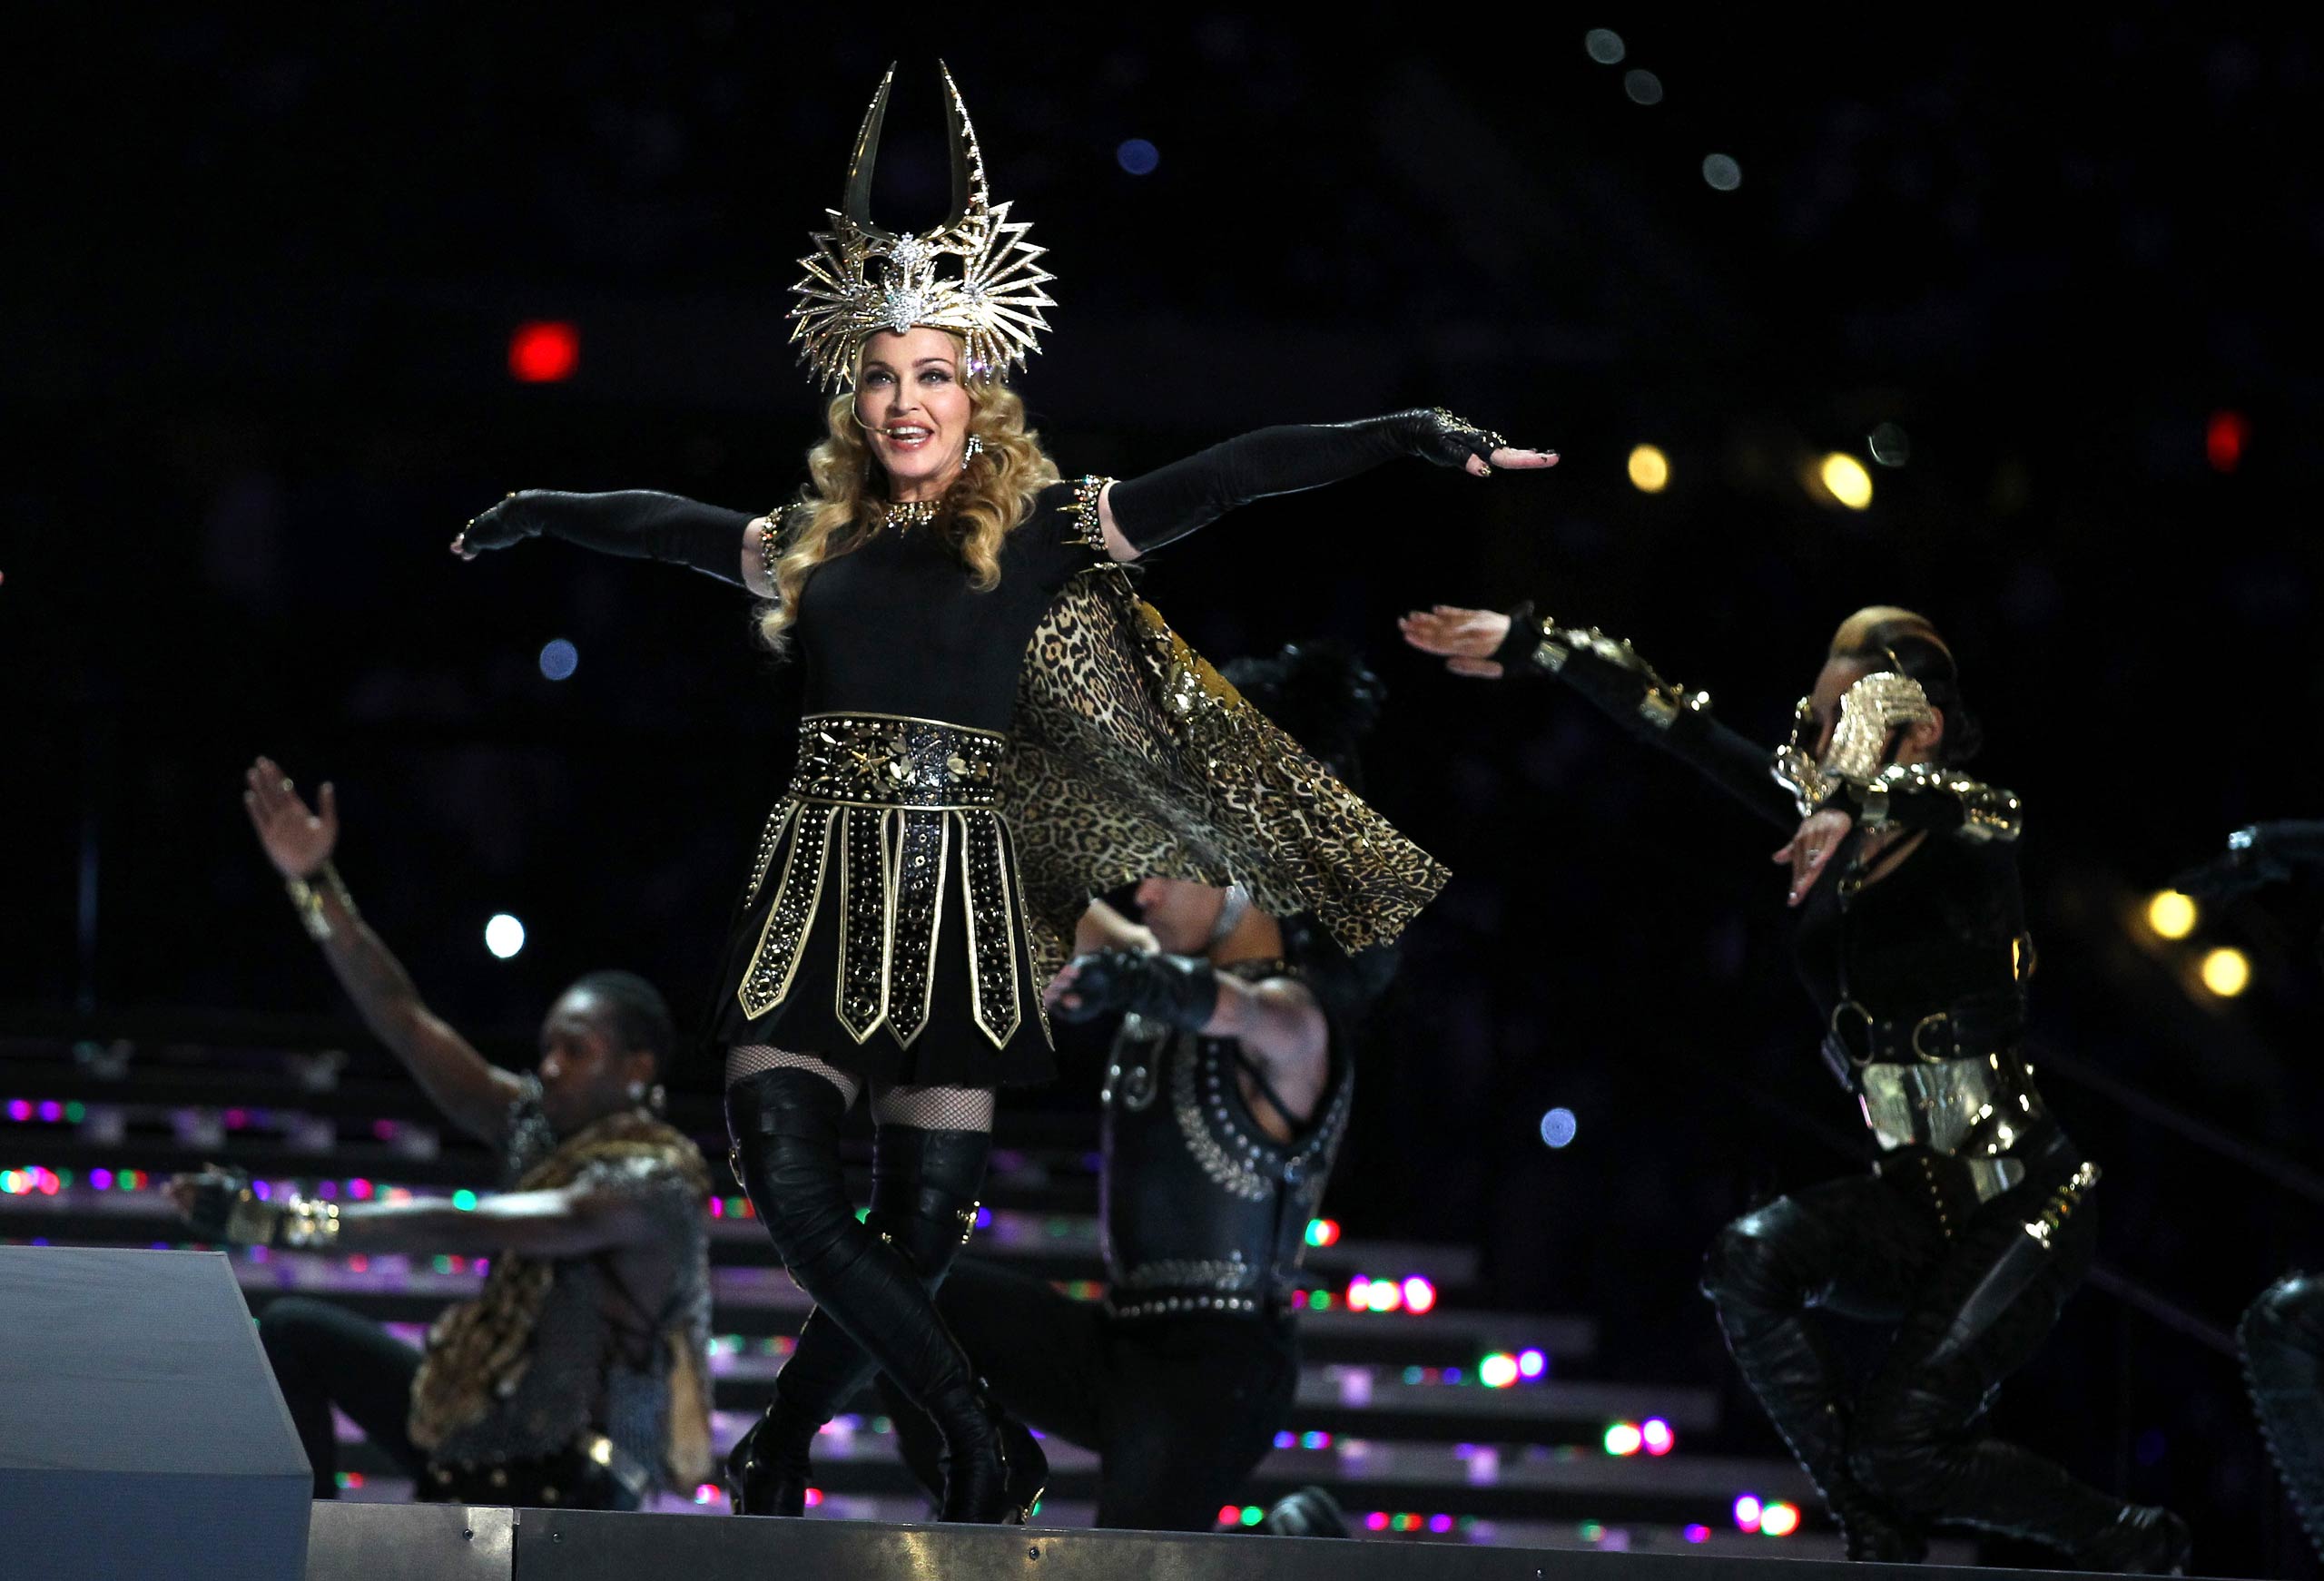 Madonna performs during the Bridgestone Super Bowl XLVI Halftime Show at Lucas Oil Stadium in Indianapolis, Ind. in 2012.